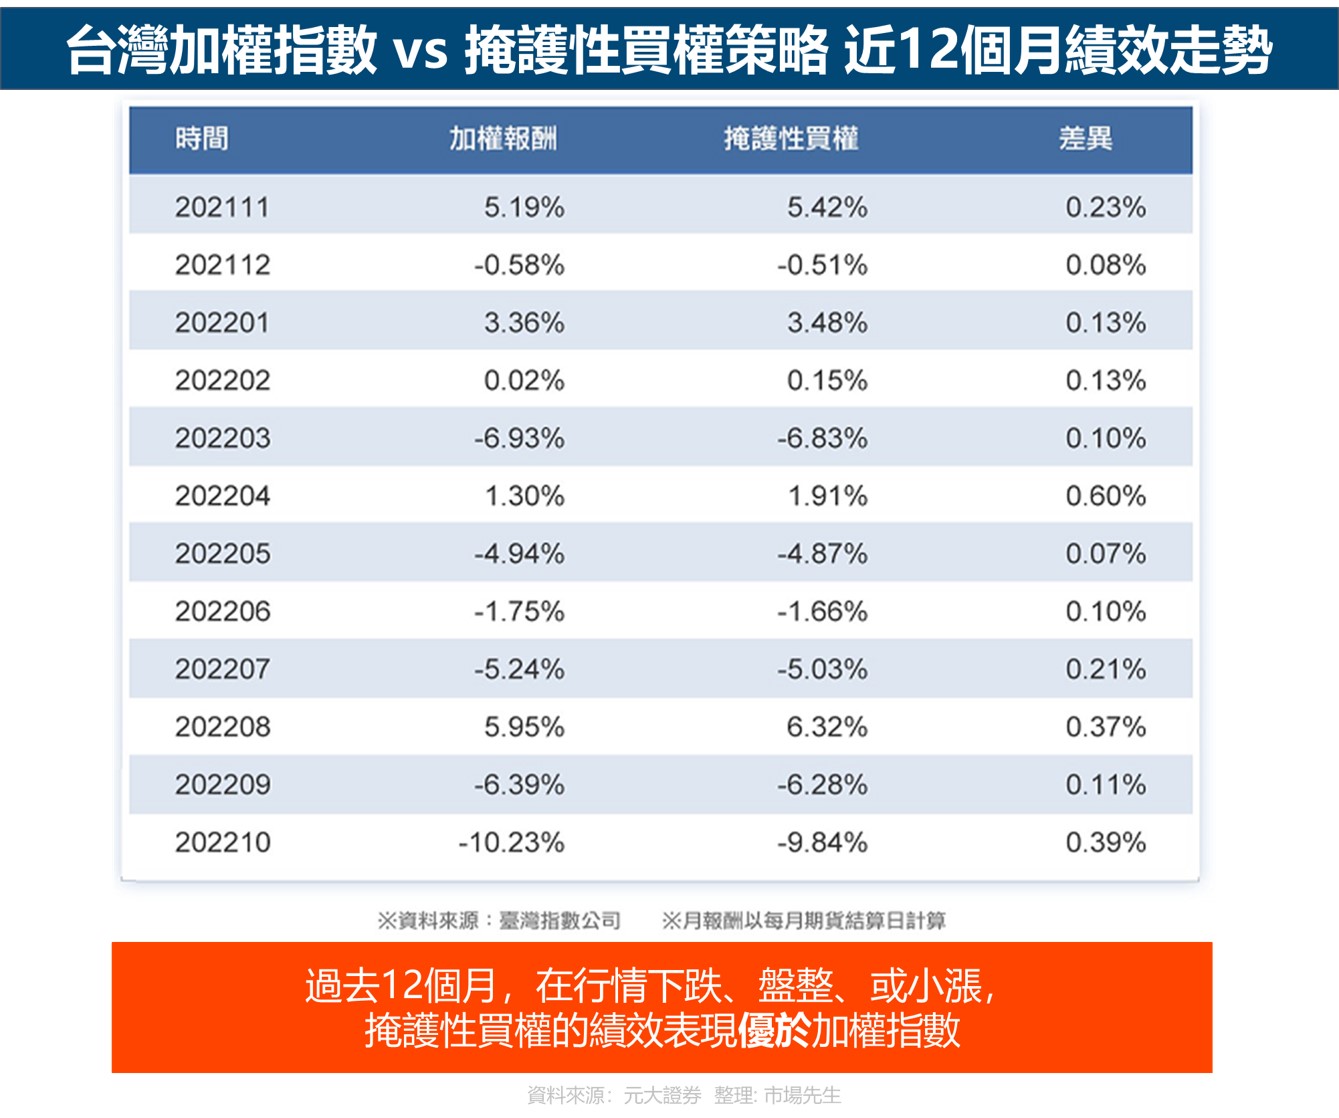 台灣加權指數 vs 掩護性買權策略 近12個月績效走勢